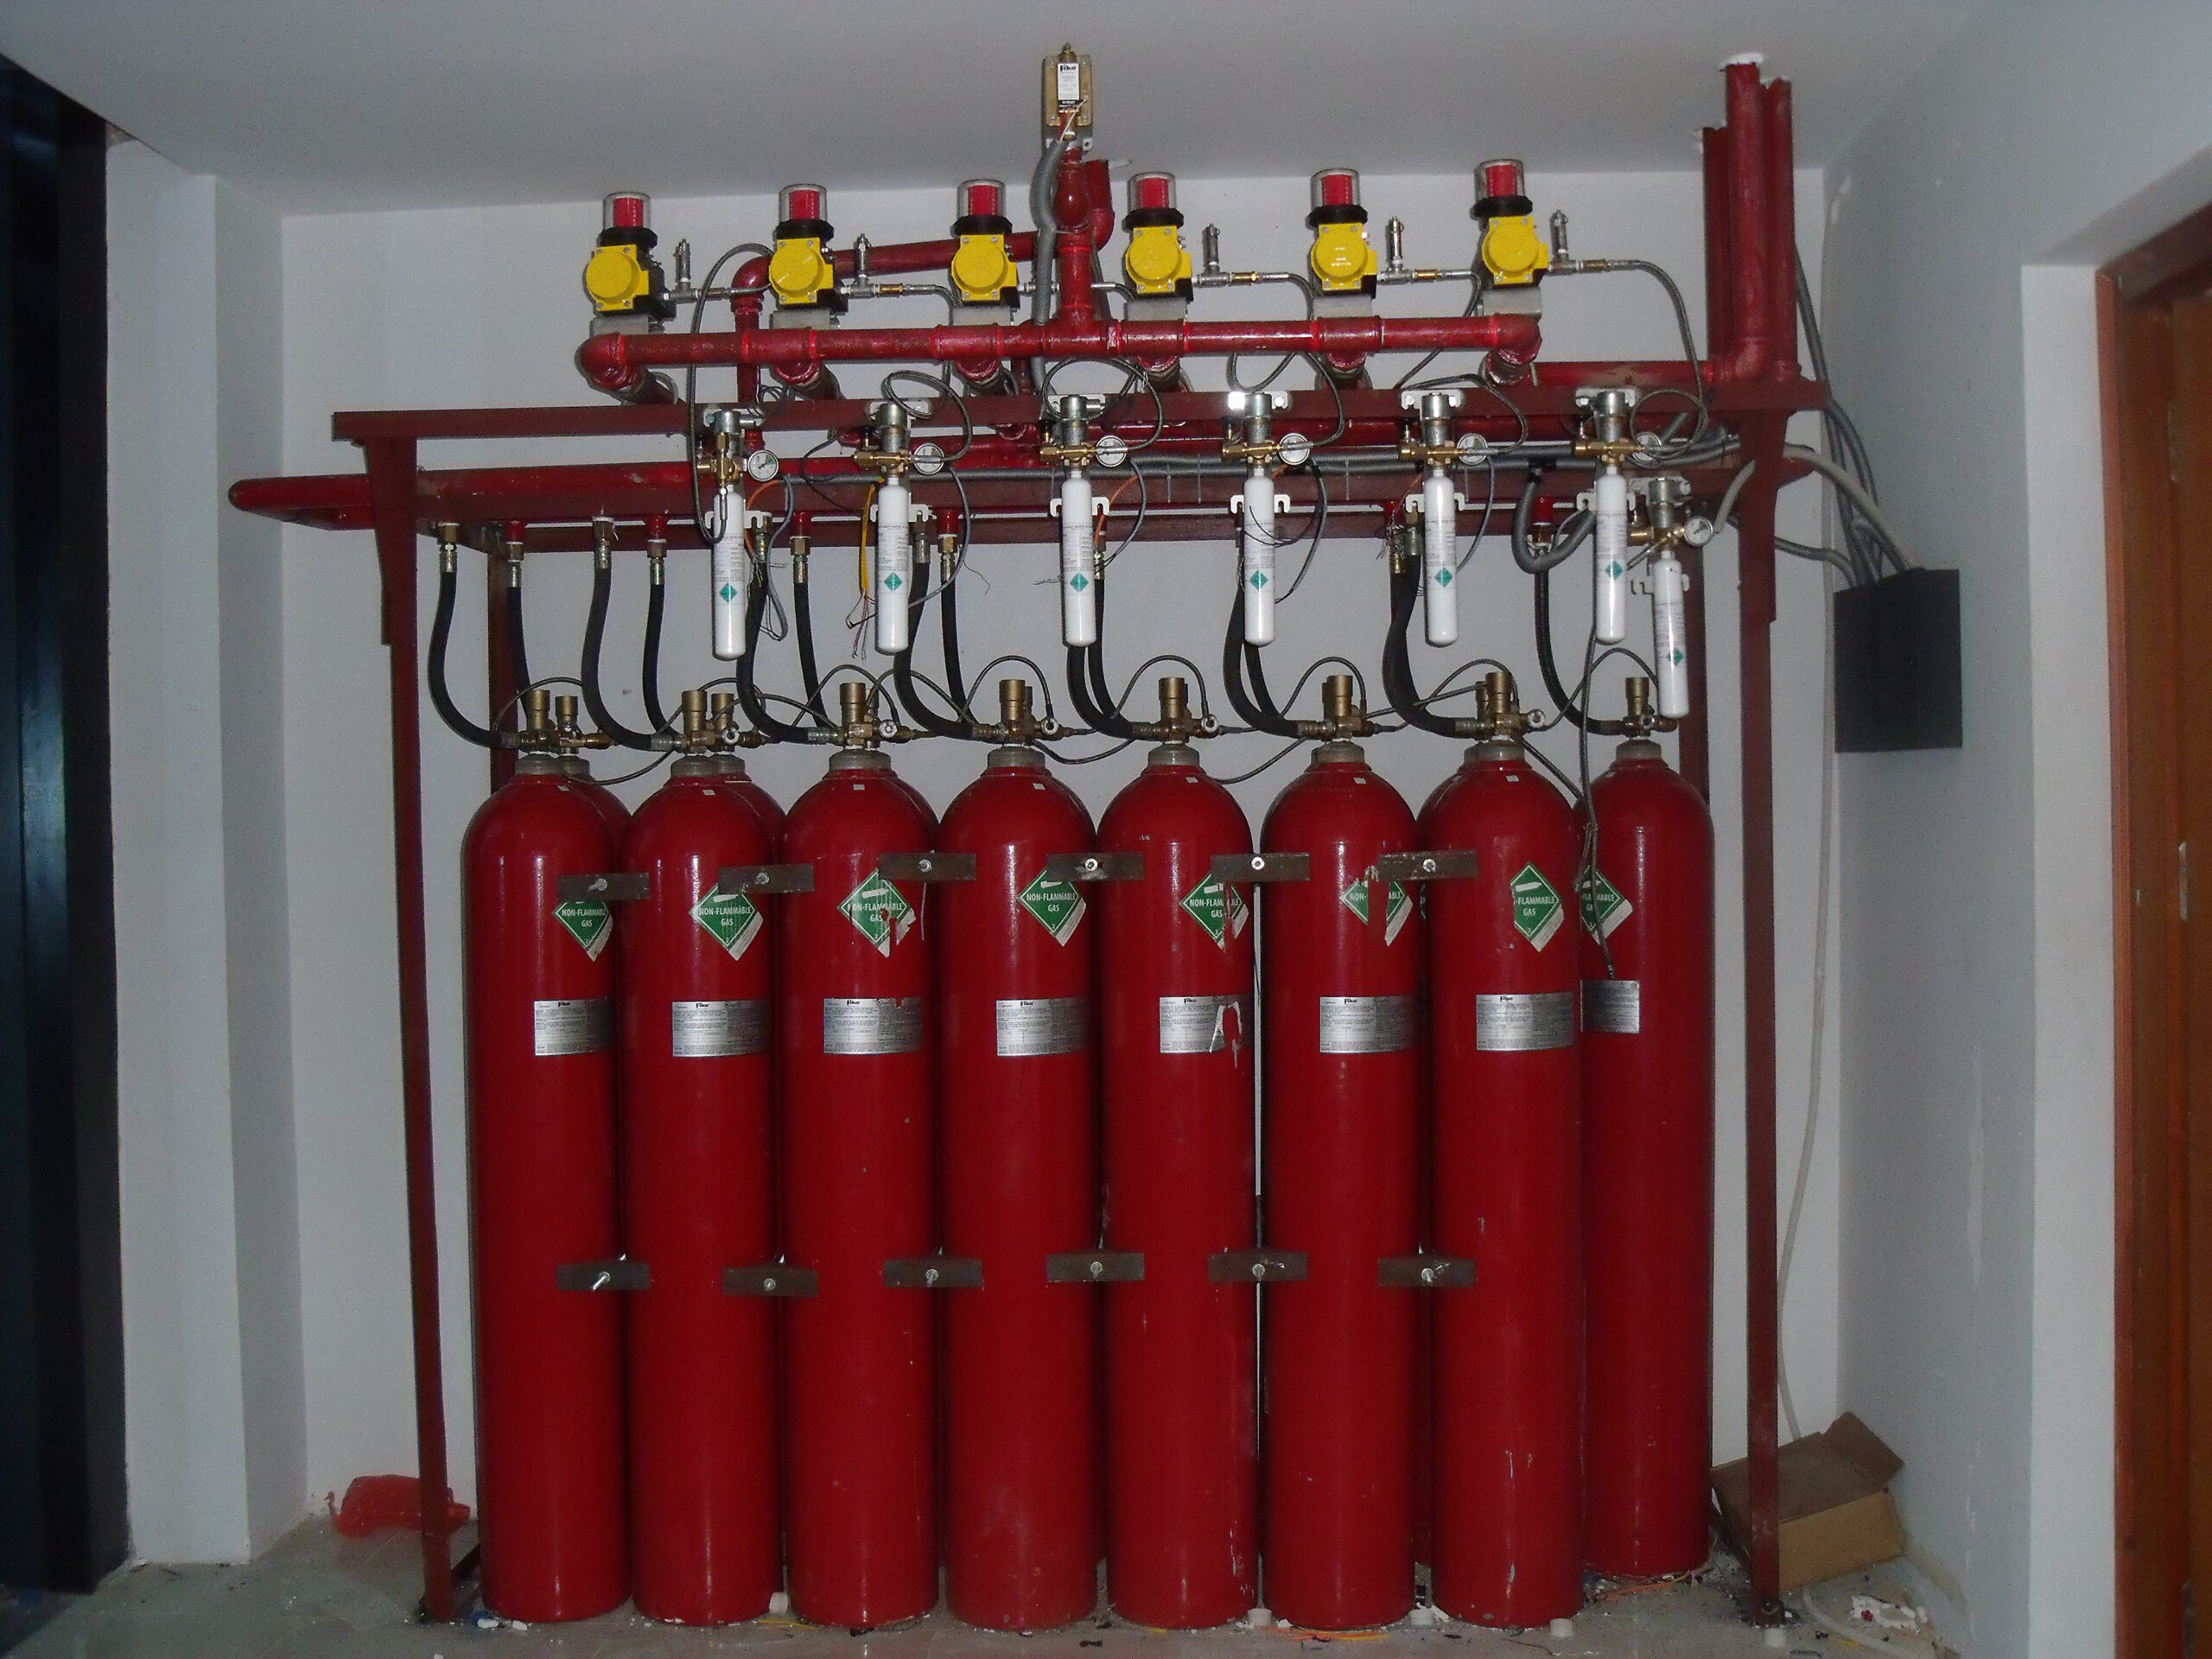 Hệ thống chữa cháy FM200  sử dụng khí FM200 không có độc hại cho con người